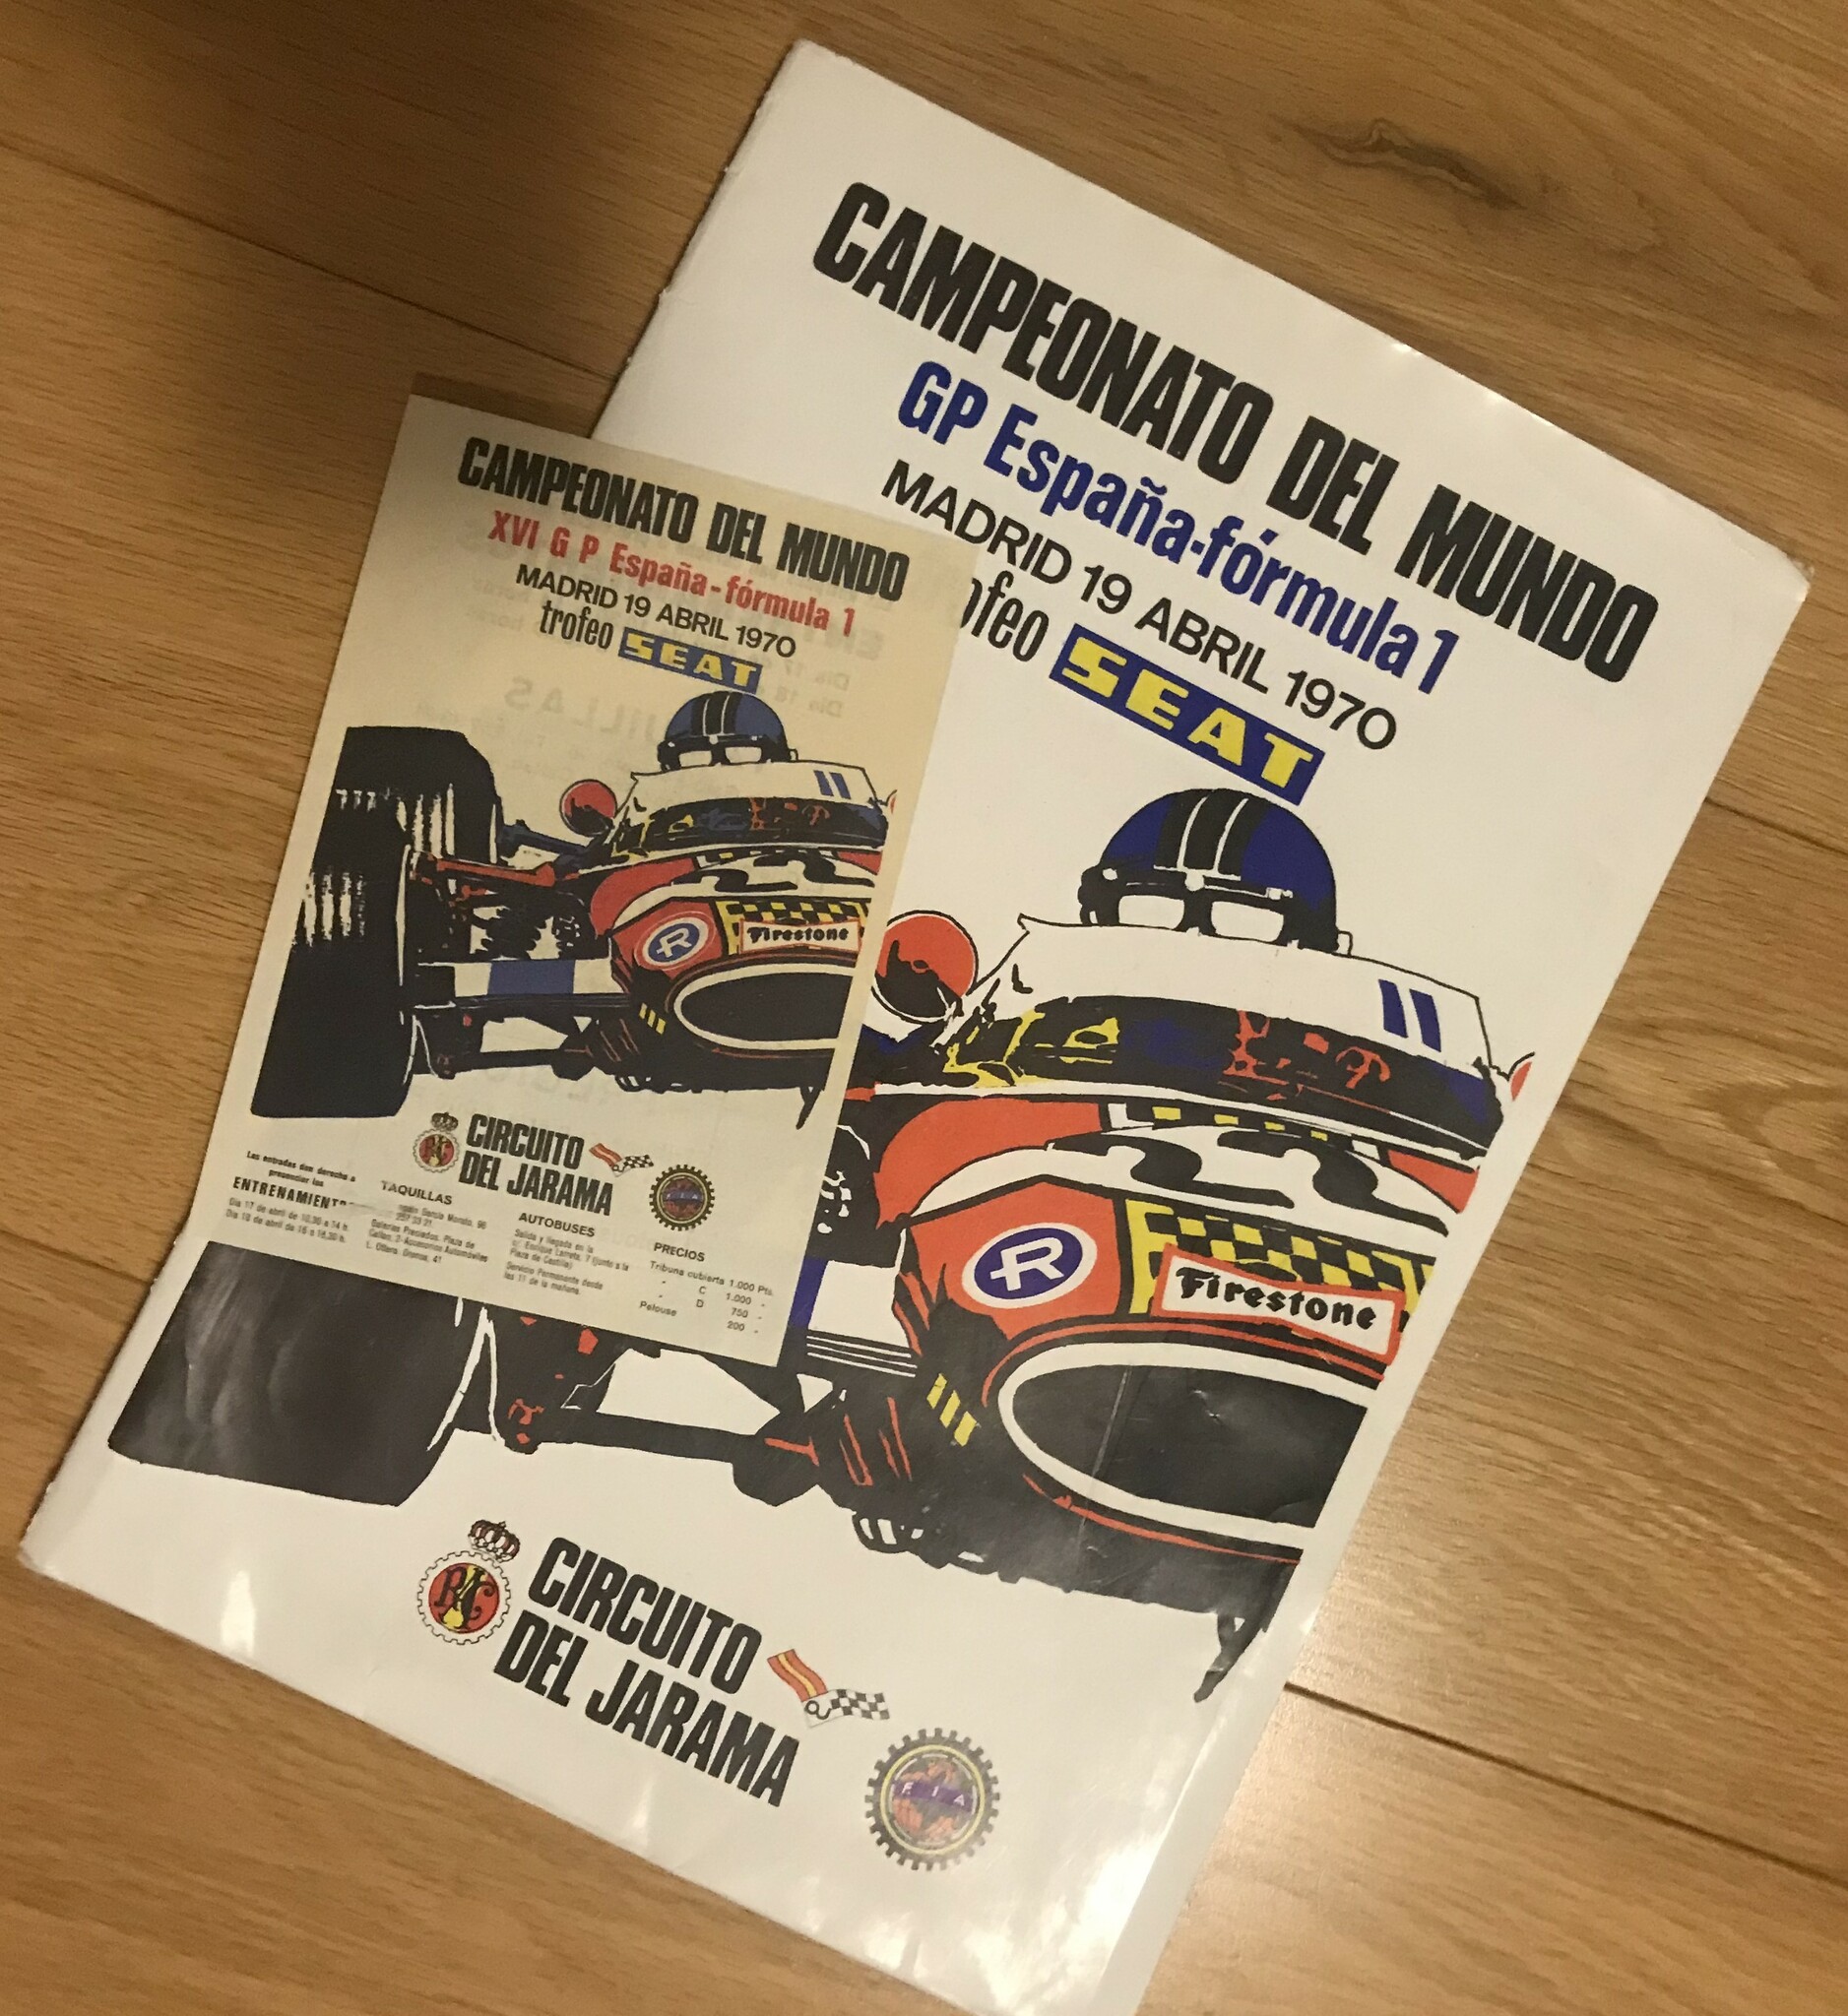 F1 Spanish Gran Premio at Jarama , 19 april 70 - press folder, ticket-info, 22 x 32 cm